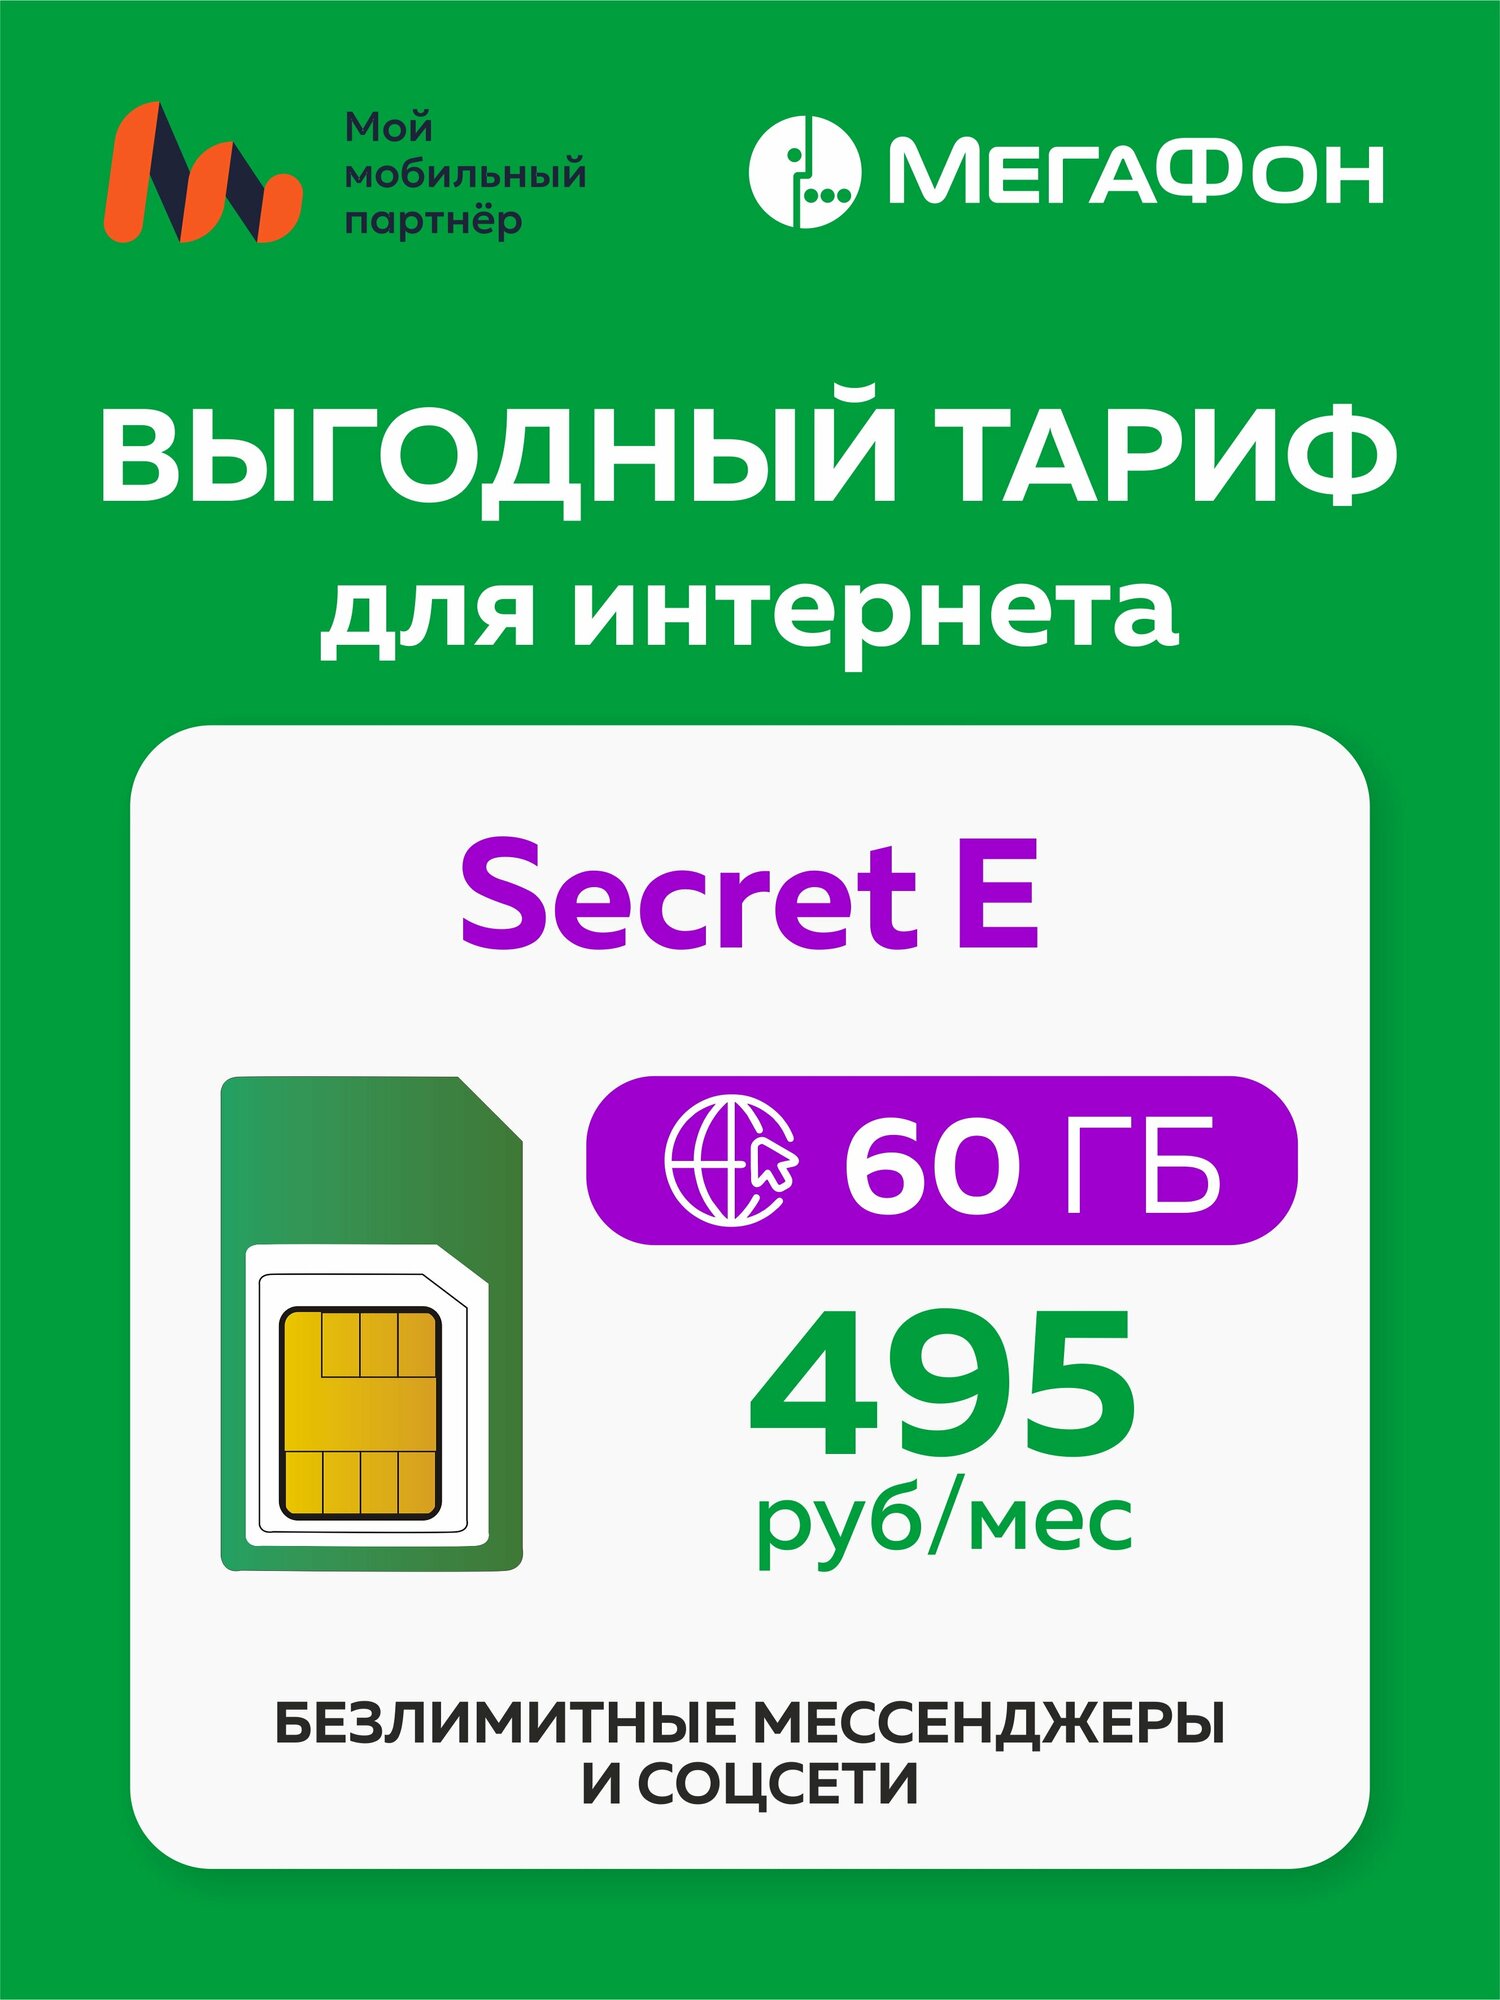 SIM-карта Secret E